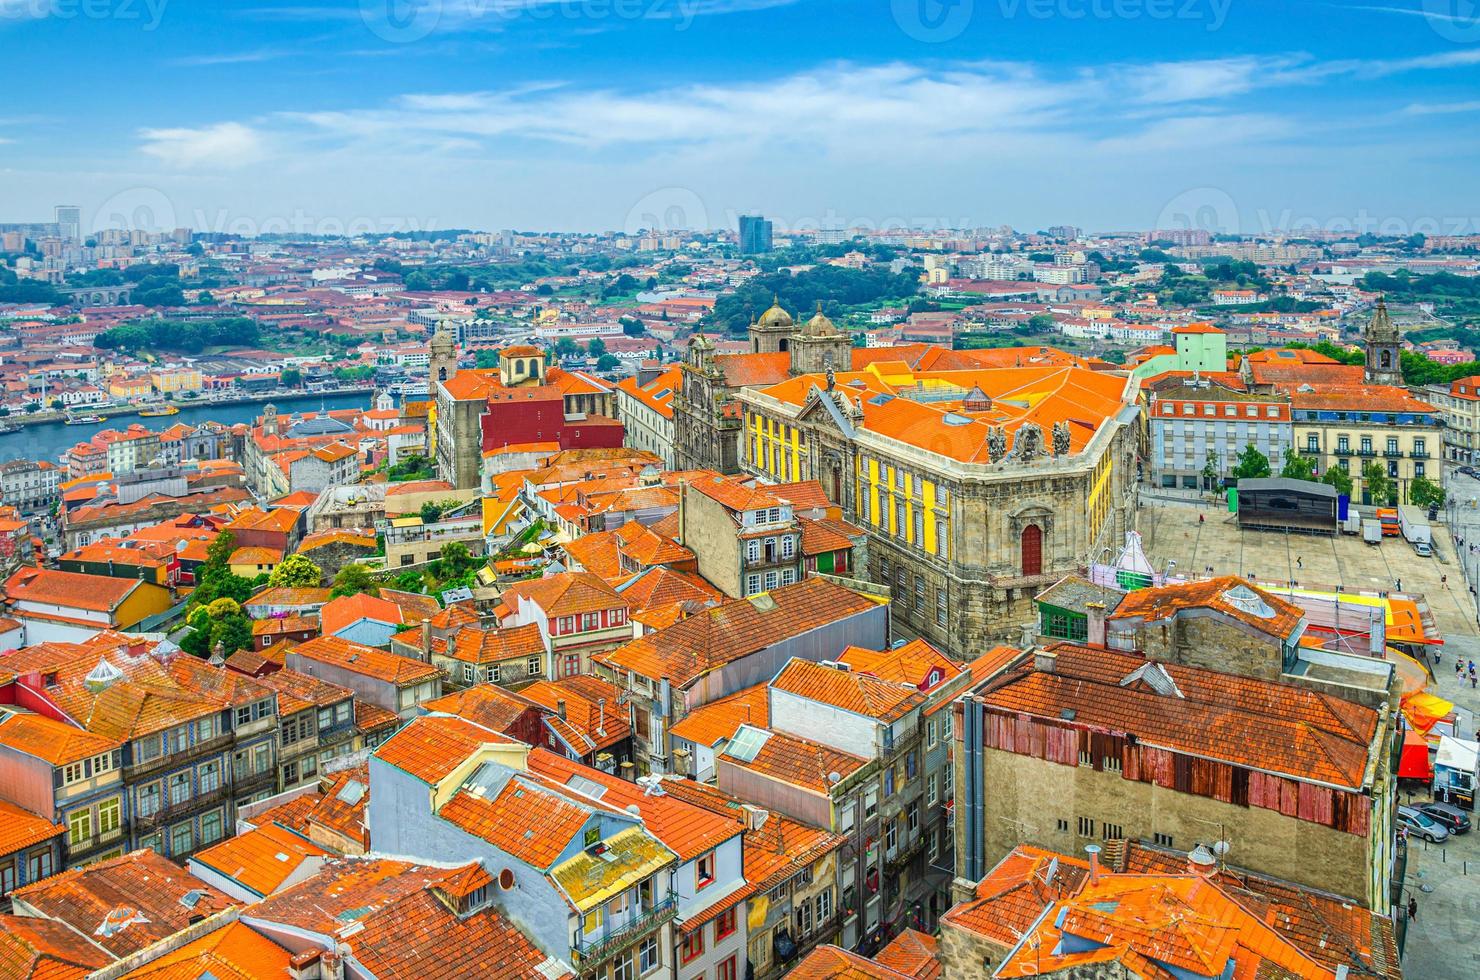 vue panoramique aérienne du centre historique de la ville de porto oporto avec des bâtiments typiques au toit de tuiles rouges photo